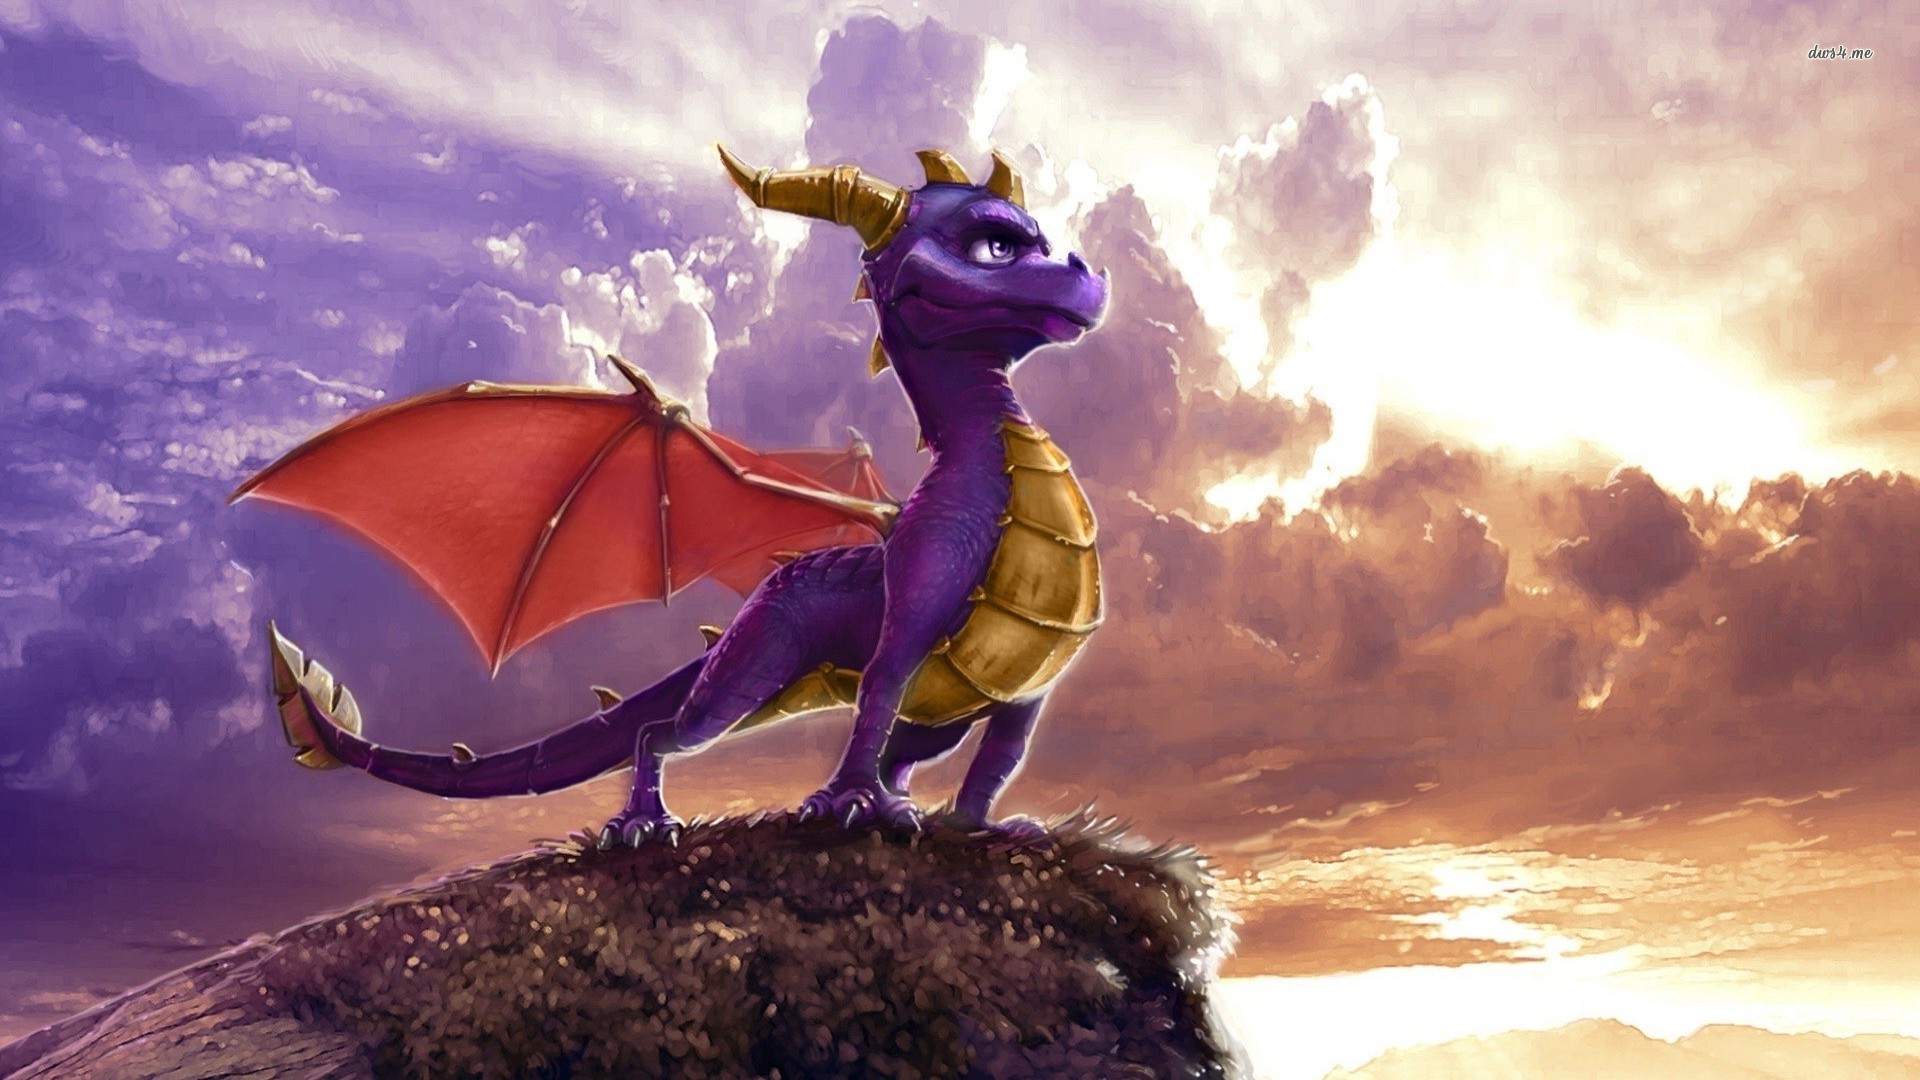 Spyro The Dragon Wallpaper Game